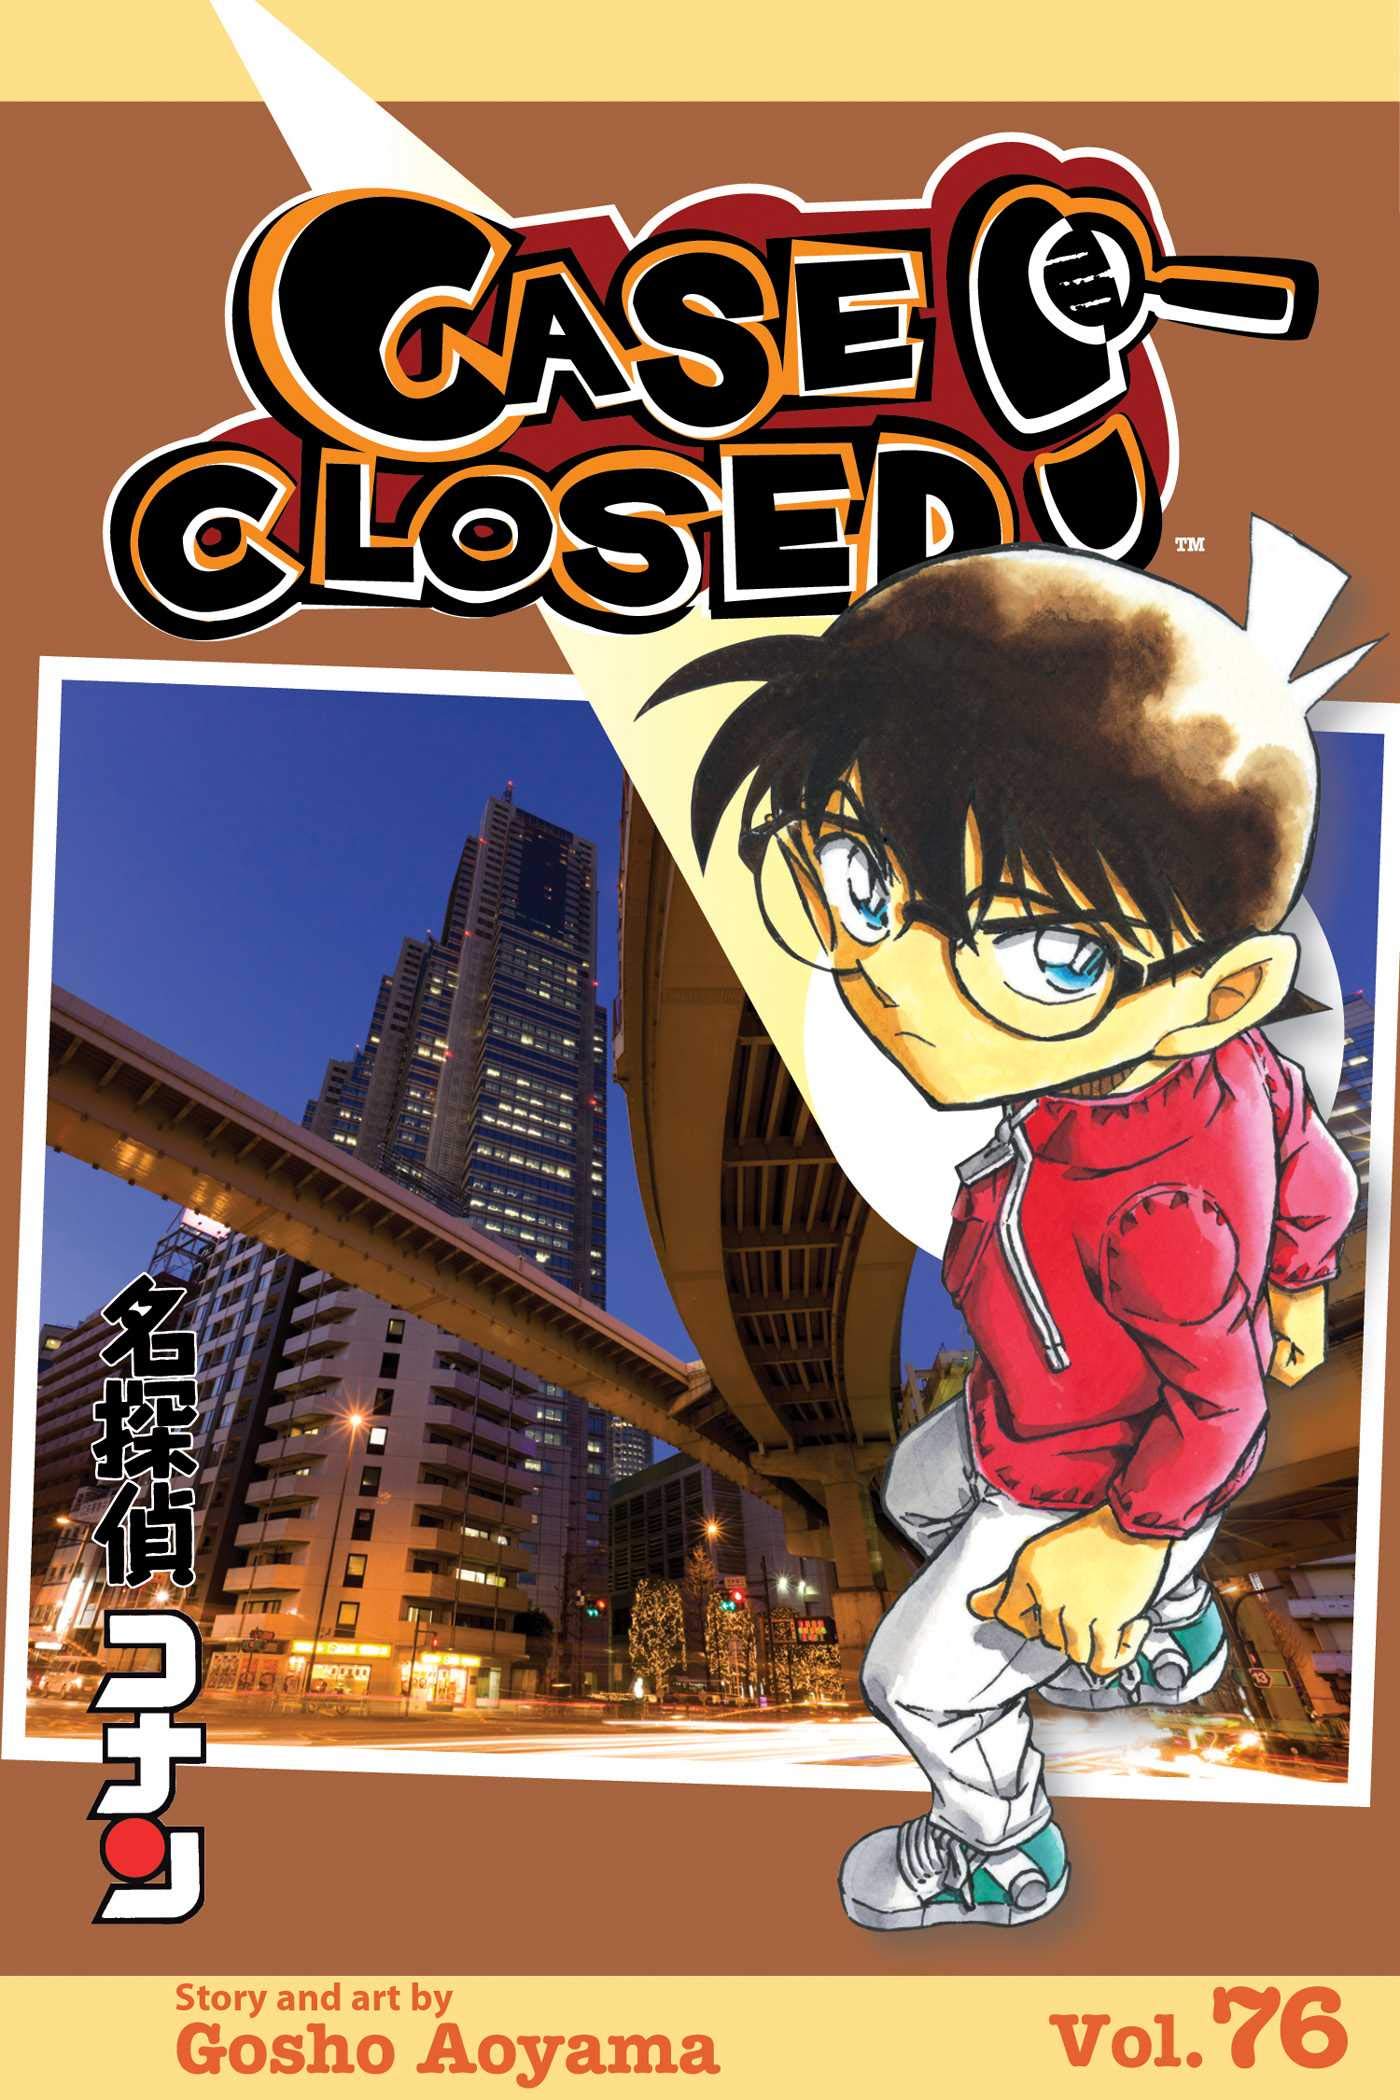 Detective Conan Vol. 76